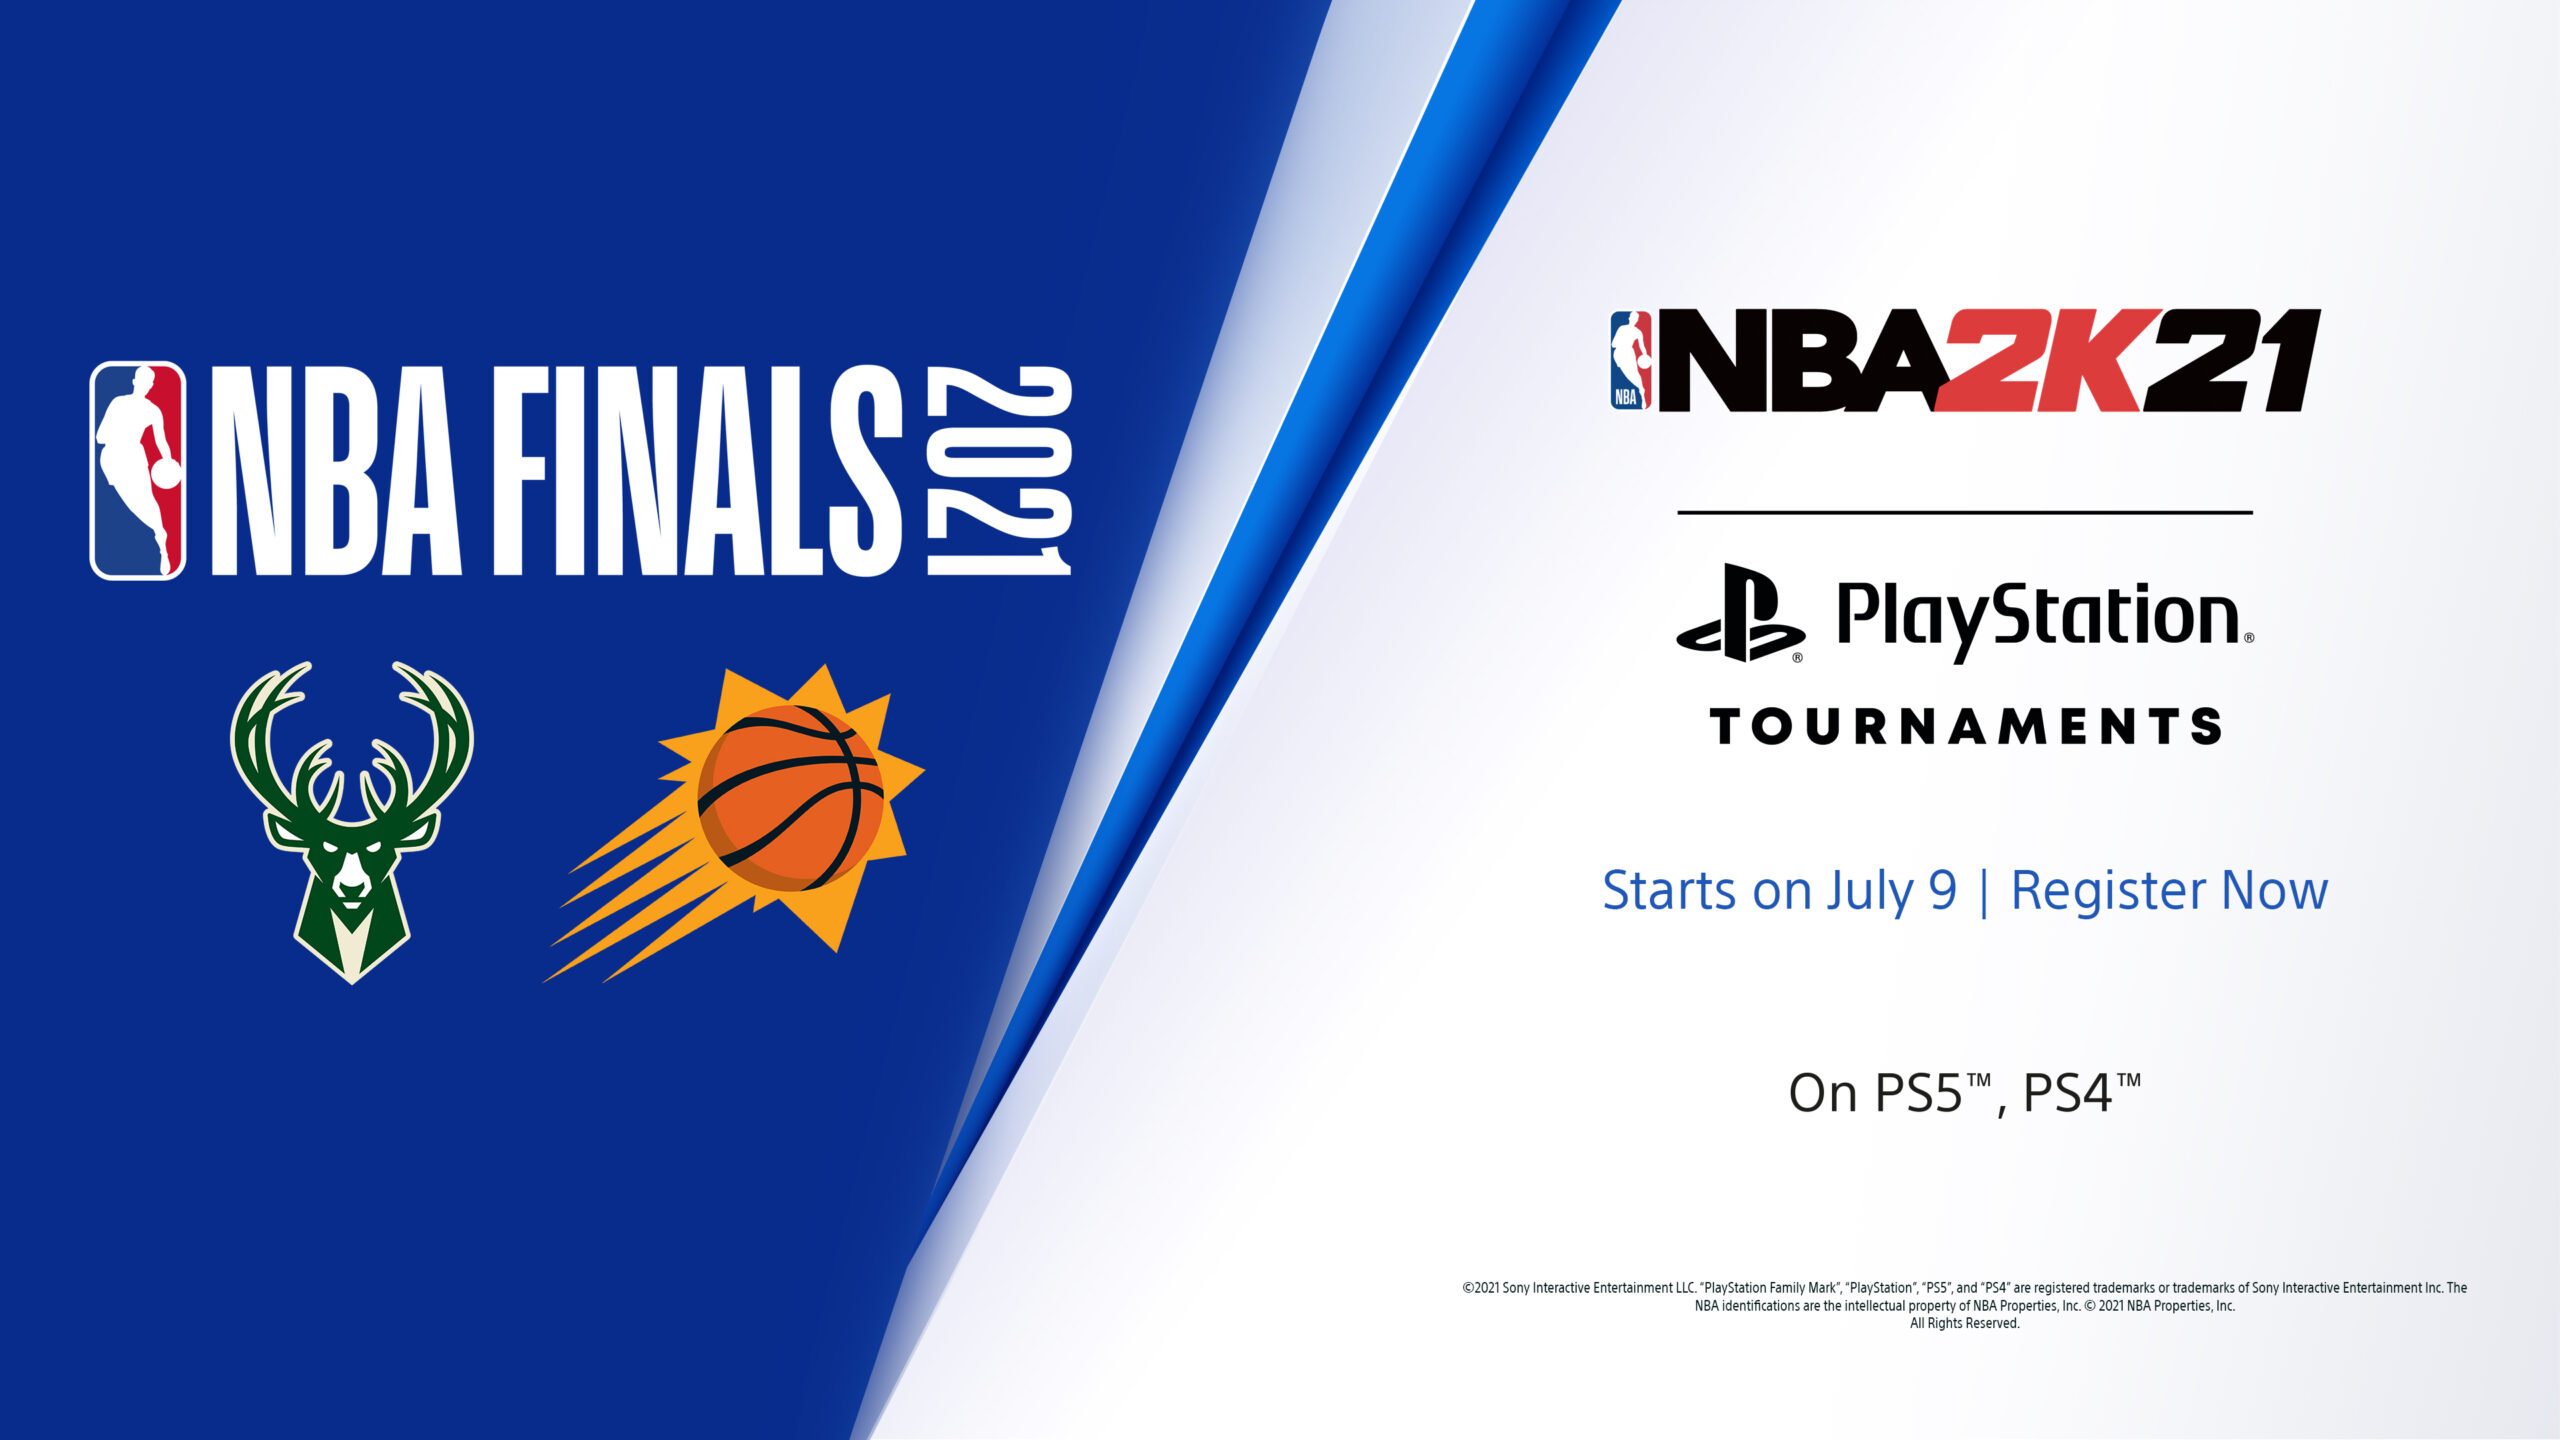 Visez la gloire avec les tournois PlayStation de NBA 2K21 : Finale de la NBA